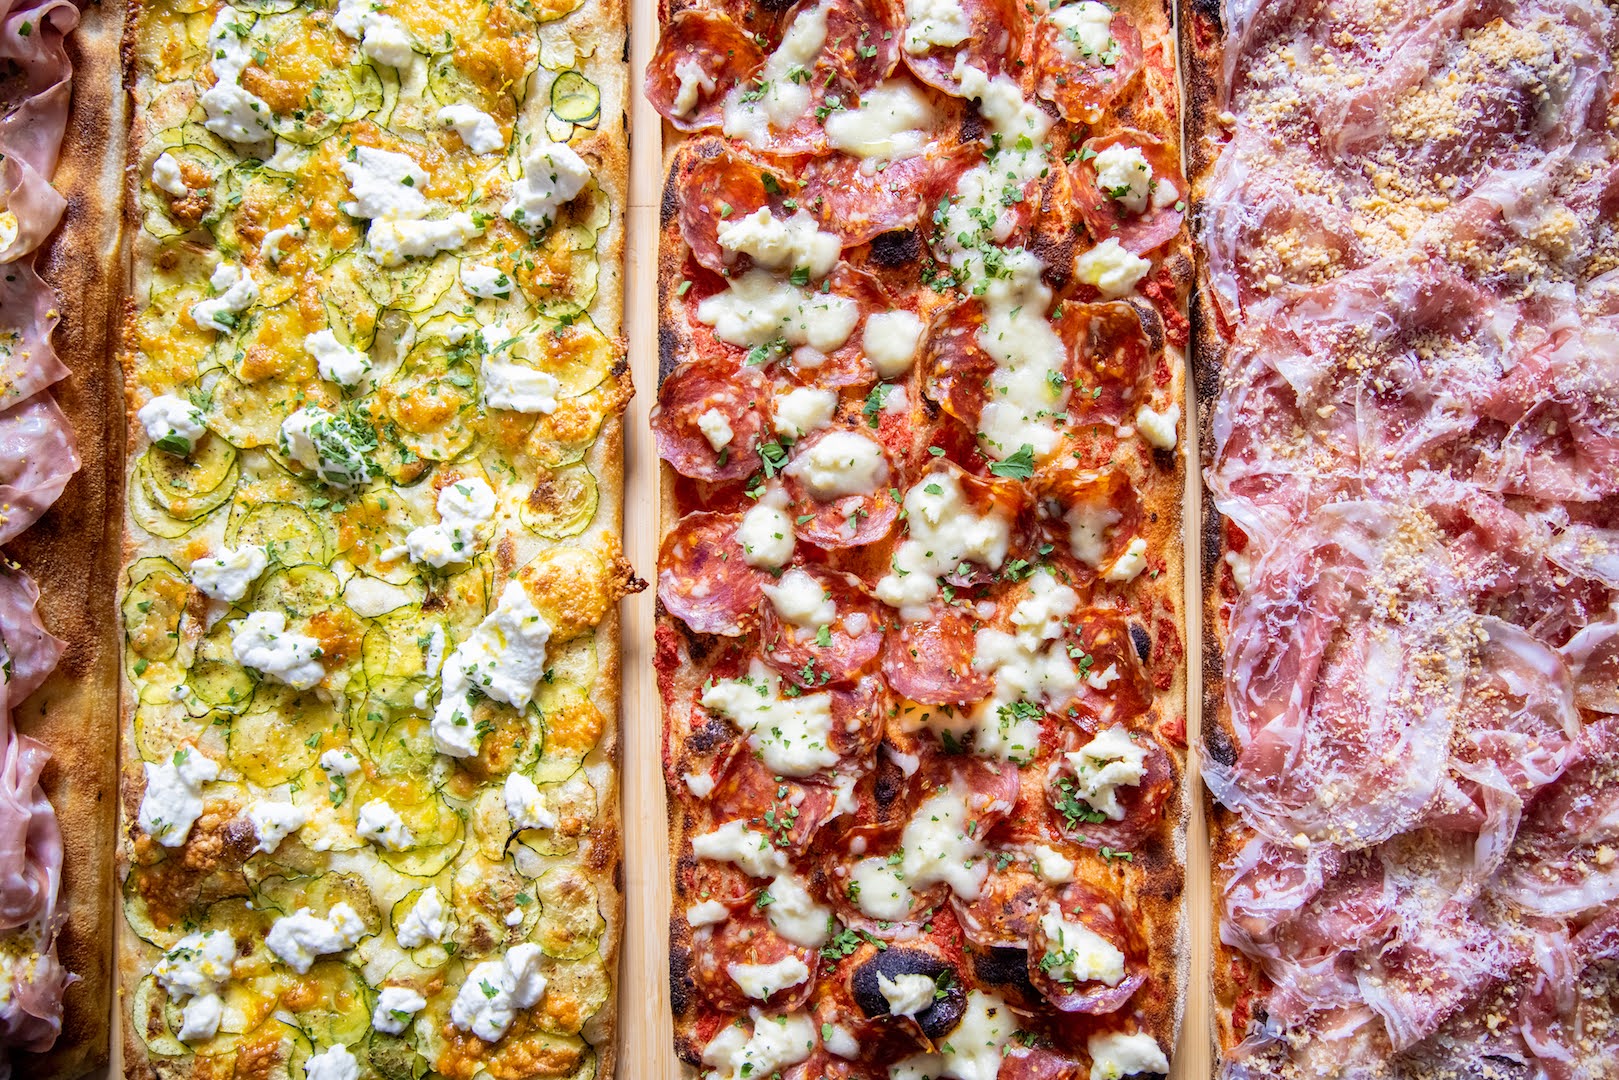 Quatre pizzas romaines croustillantes et colorées, disposées les unes à côté des autres